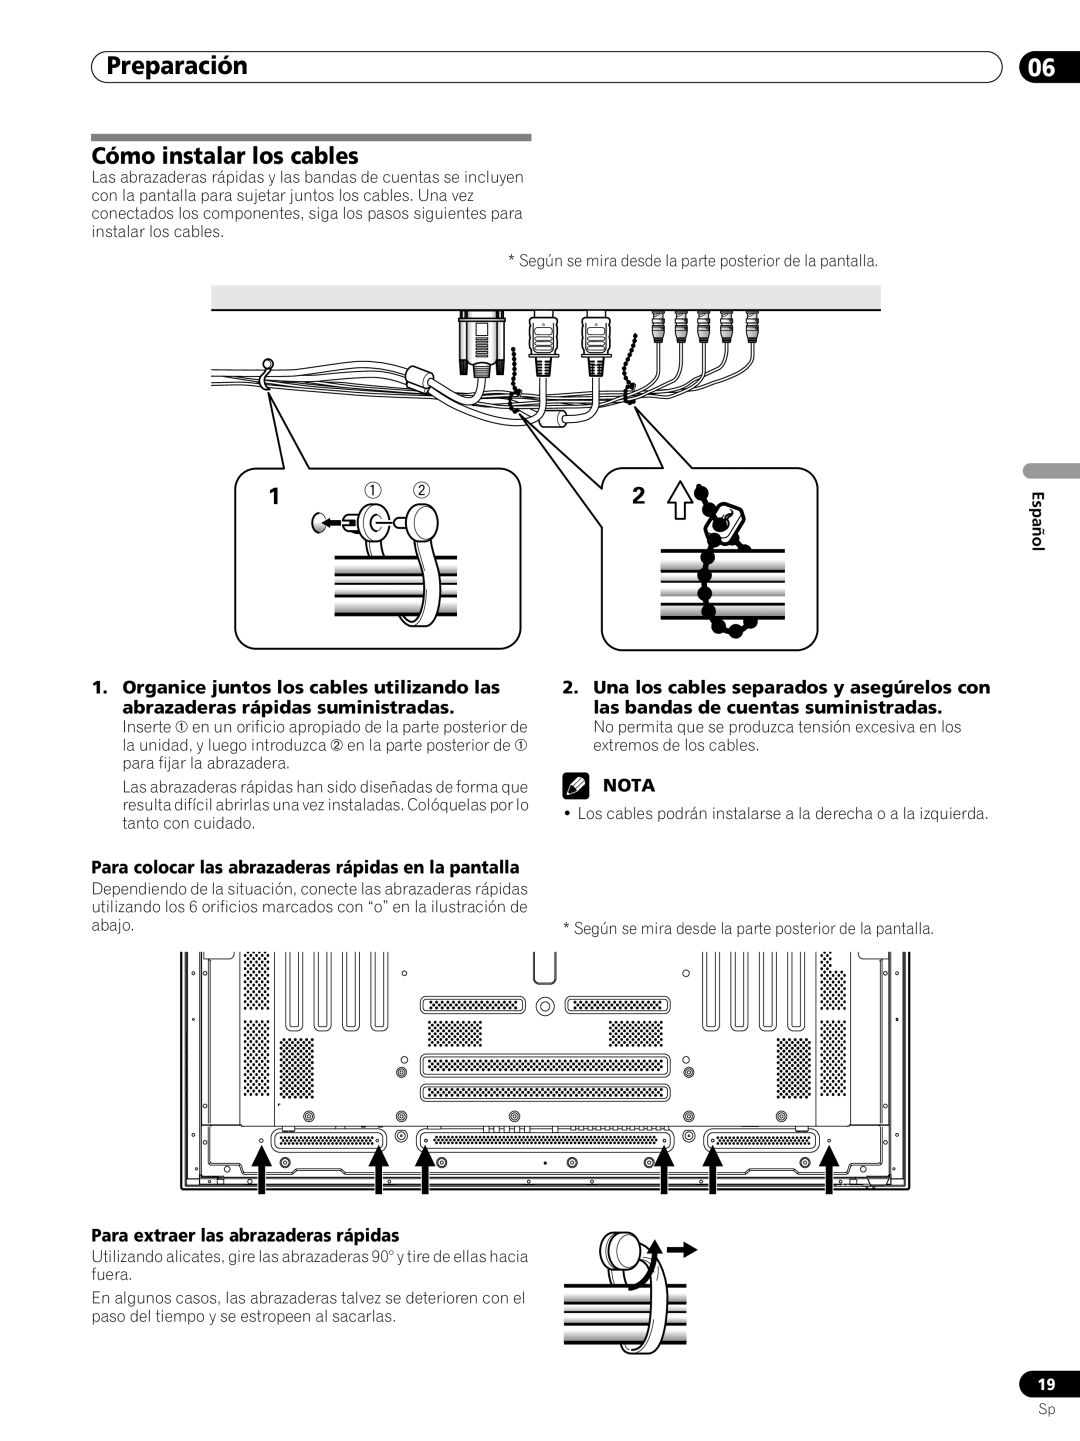 Pioneer PRO-FHD1 Cómo instalar los cables, Preparación, Nota, Para colocar las abrazaderas rápidas en la pantalla, Español 